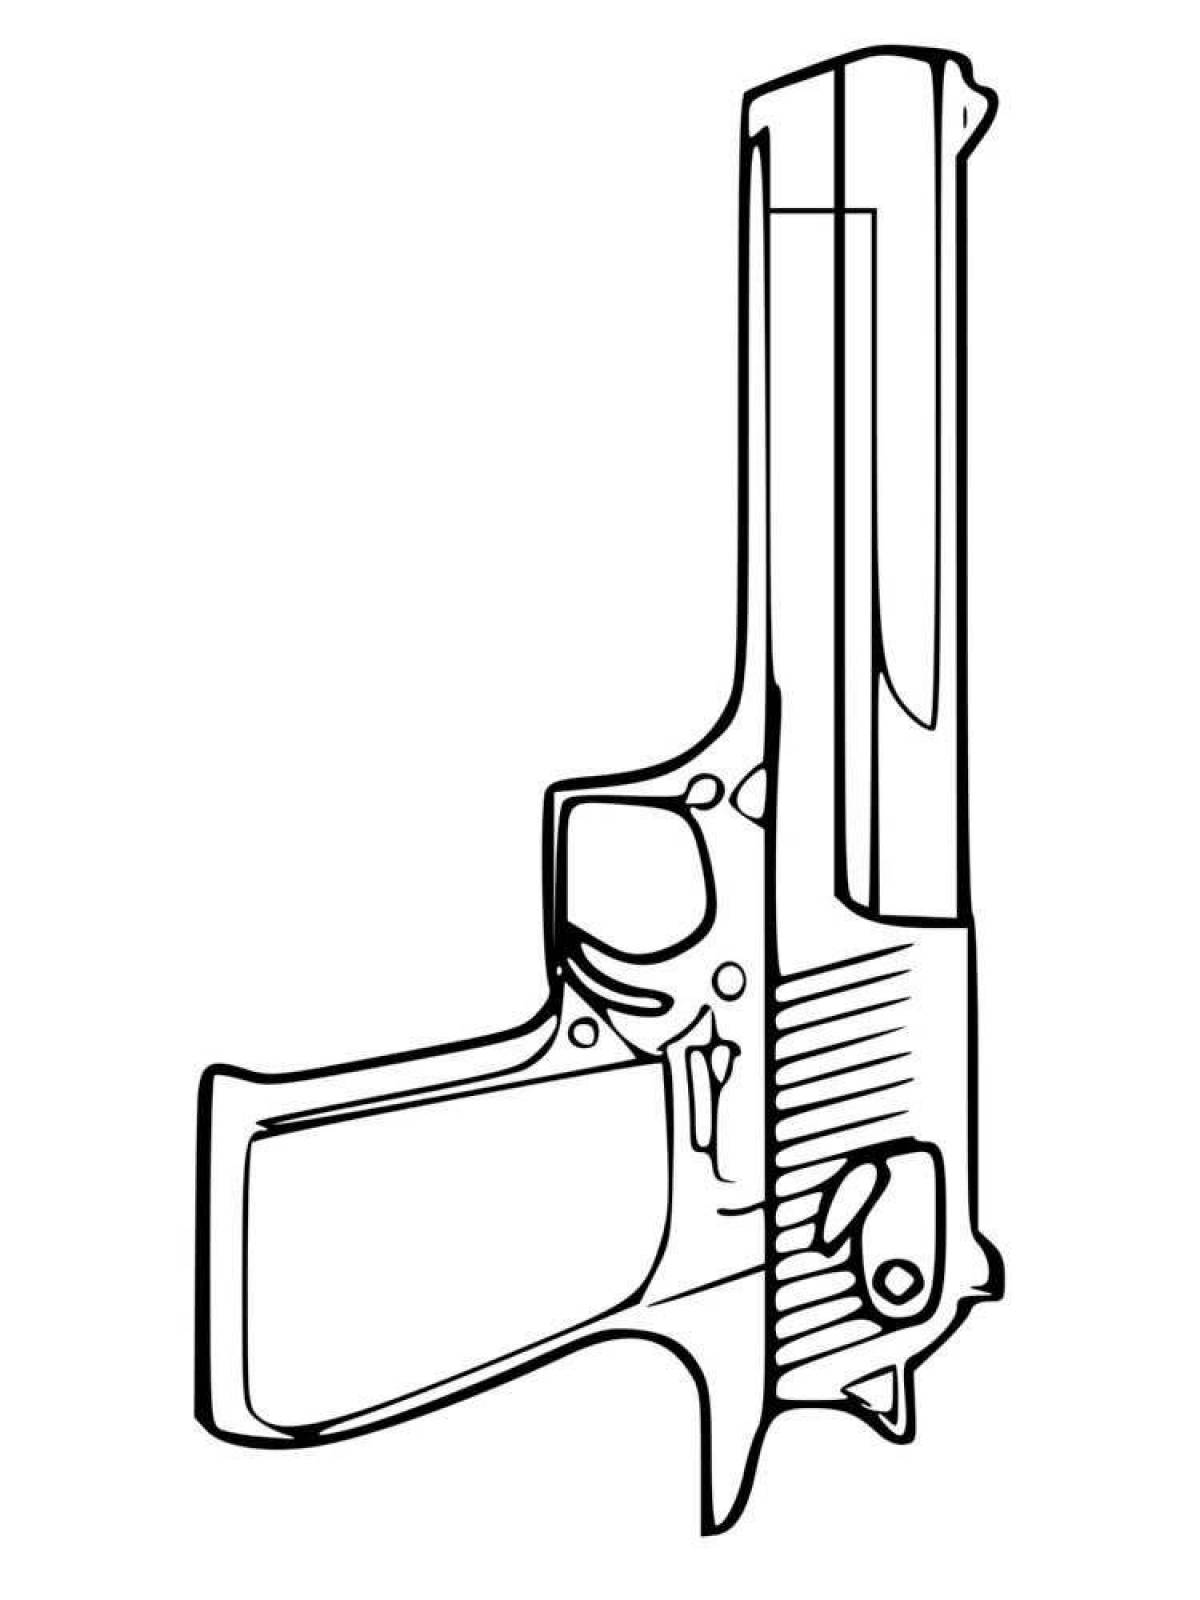 П350 пистолет чертеж